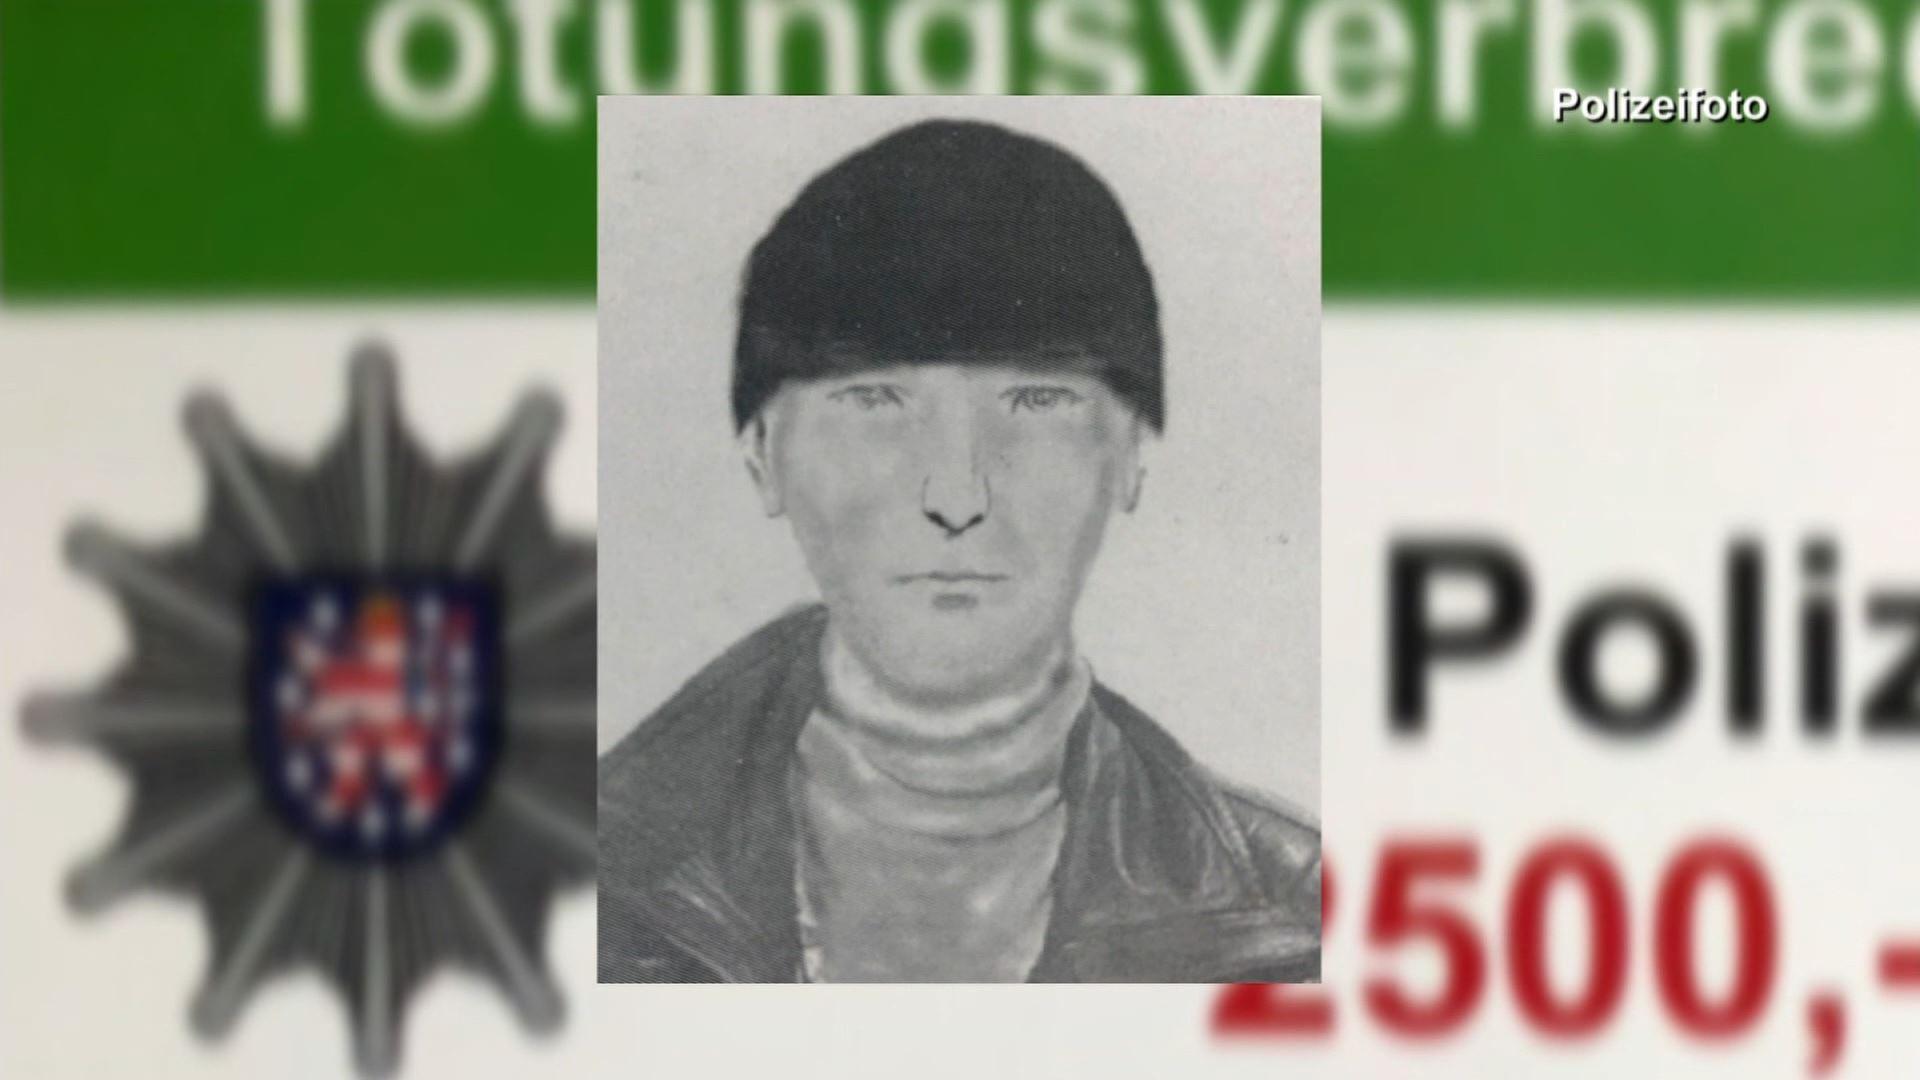 Phantombild des Täters: Schlankes Gesicht, schwarze Wollmütze. Im Hintergrund: Polizeifahndungsplakat